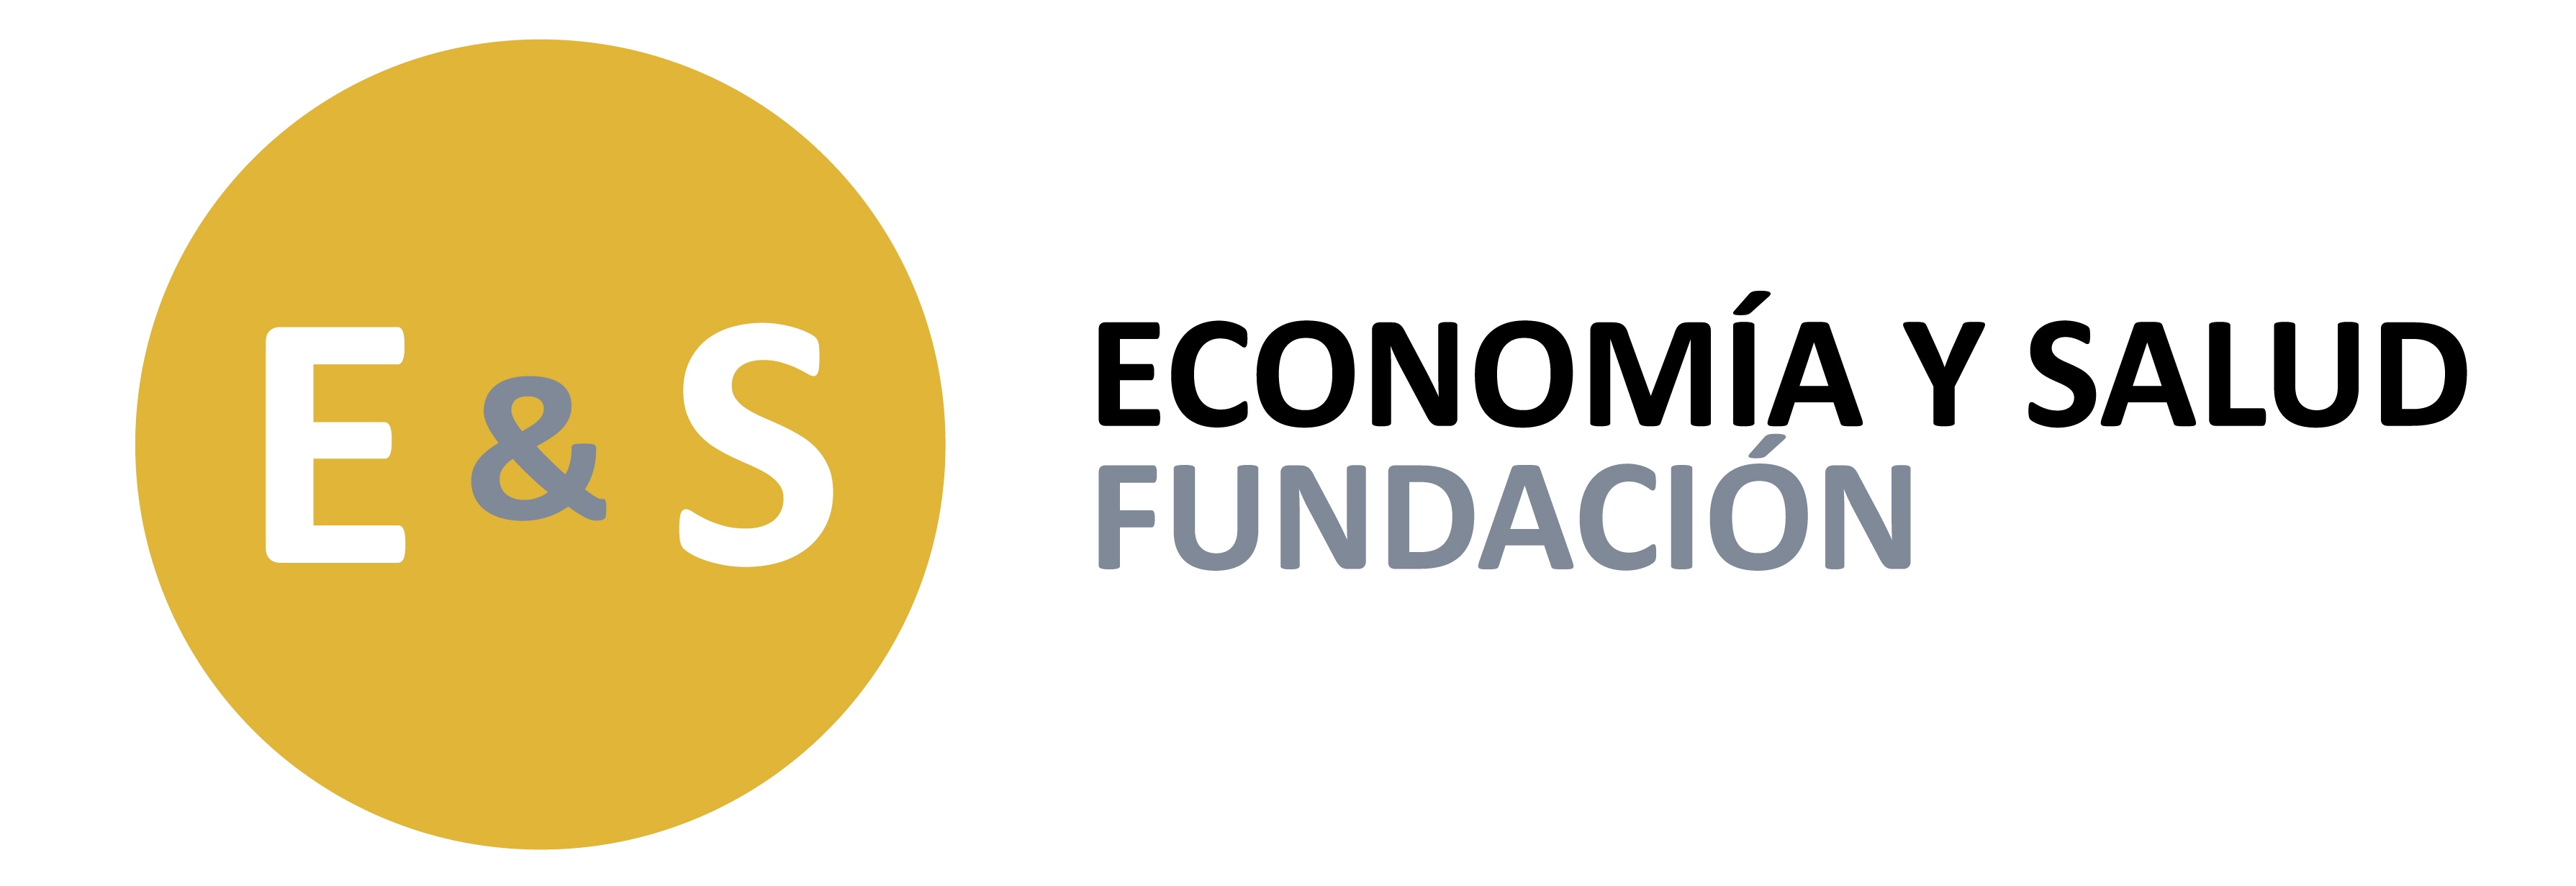 Fundación Economía y Salud